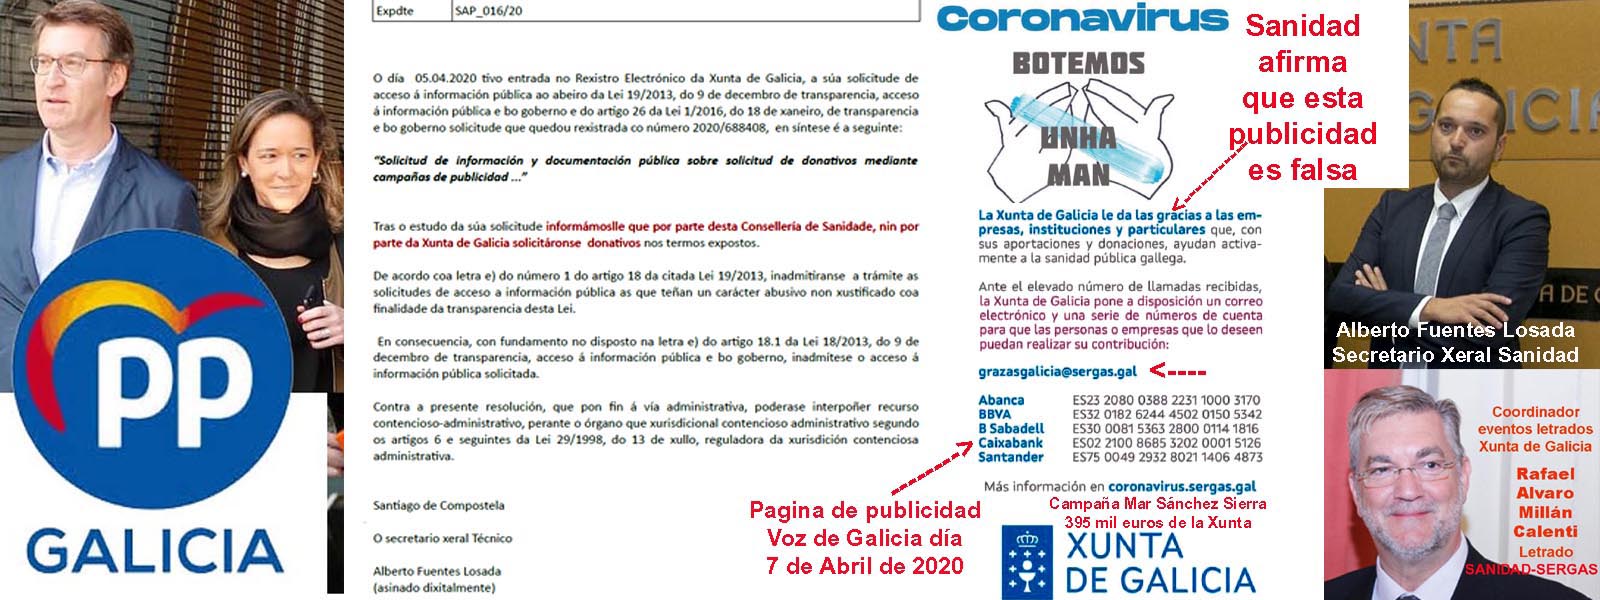 Exclusiva; El Gobierno de Feijóo esta blanqueando dinero de donativos  anónimos mediante 4 cuentas bancarias justificadas en el coronavirus que  niega su existencia el Sergas. - Xornal Galicia